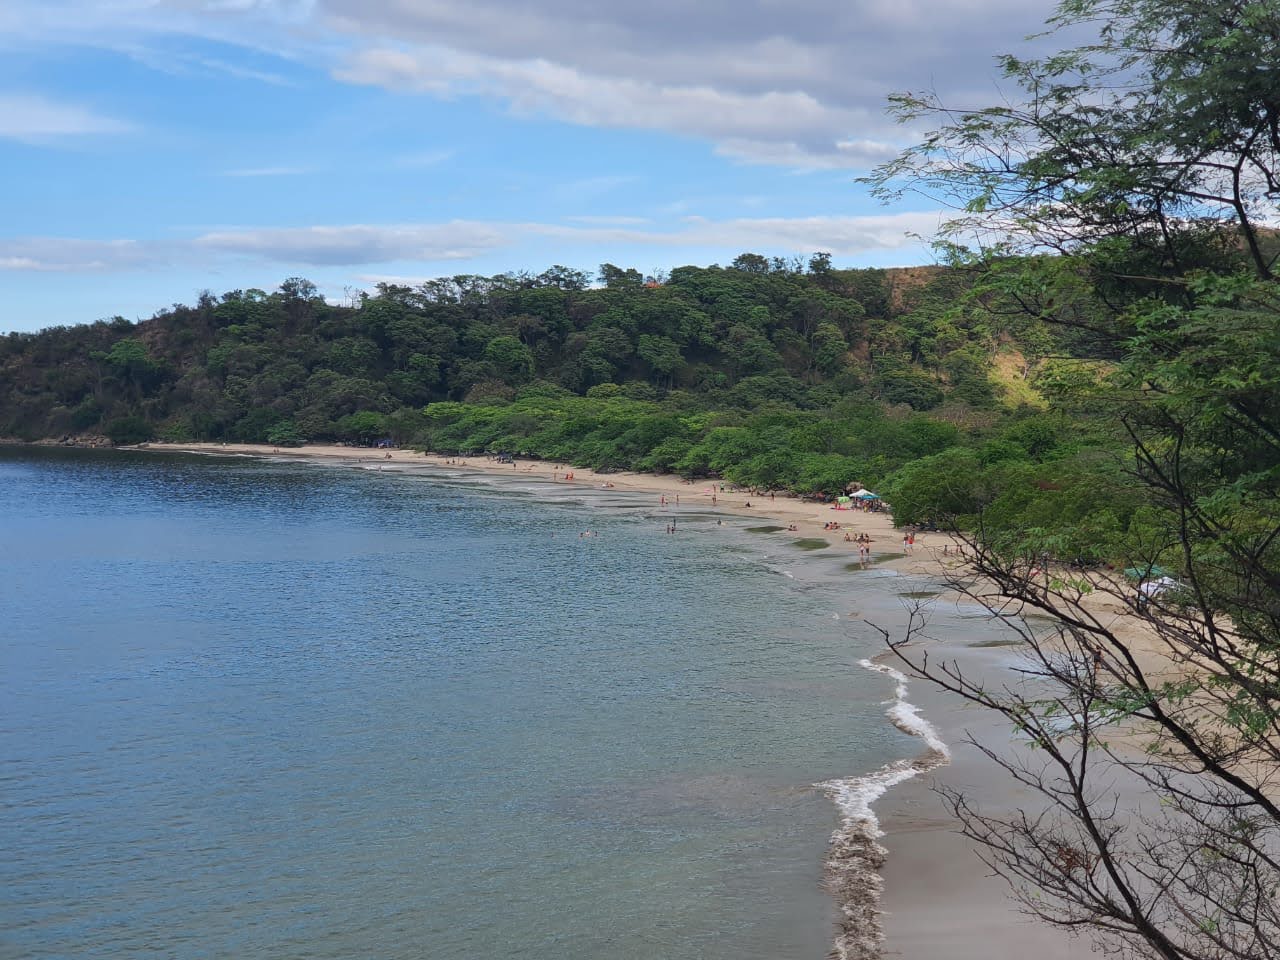 Foto di Rajada beach II ubicato in zona naturale